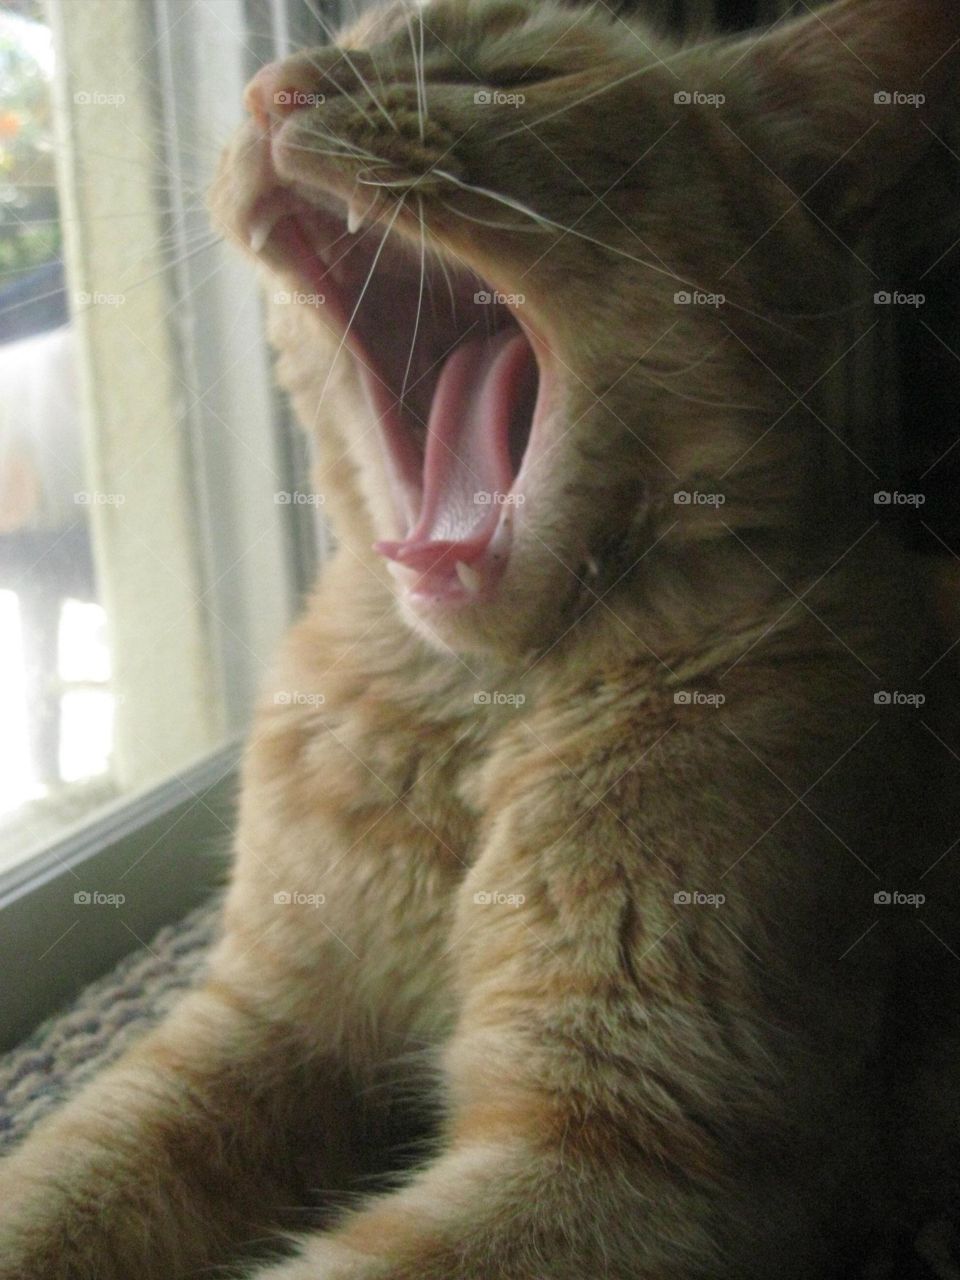 Yawning monster 